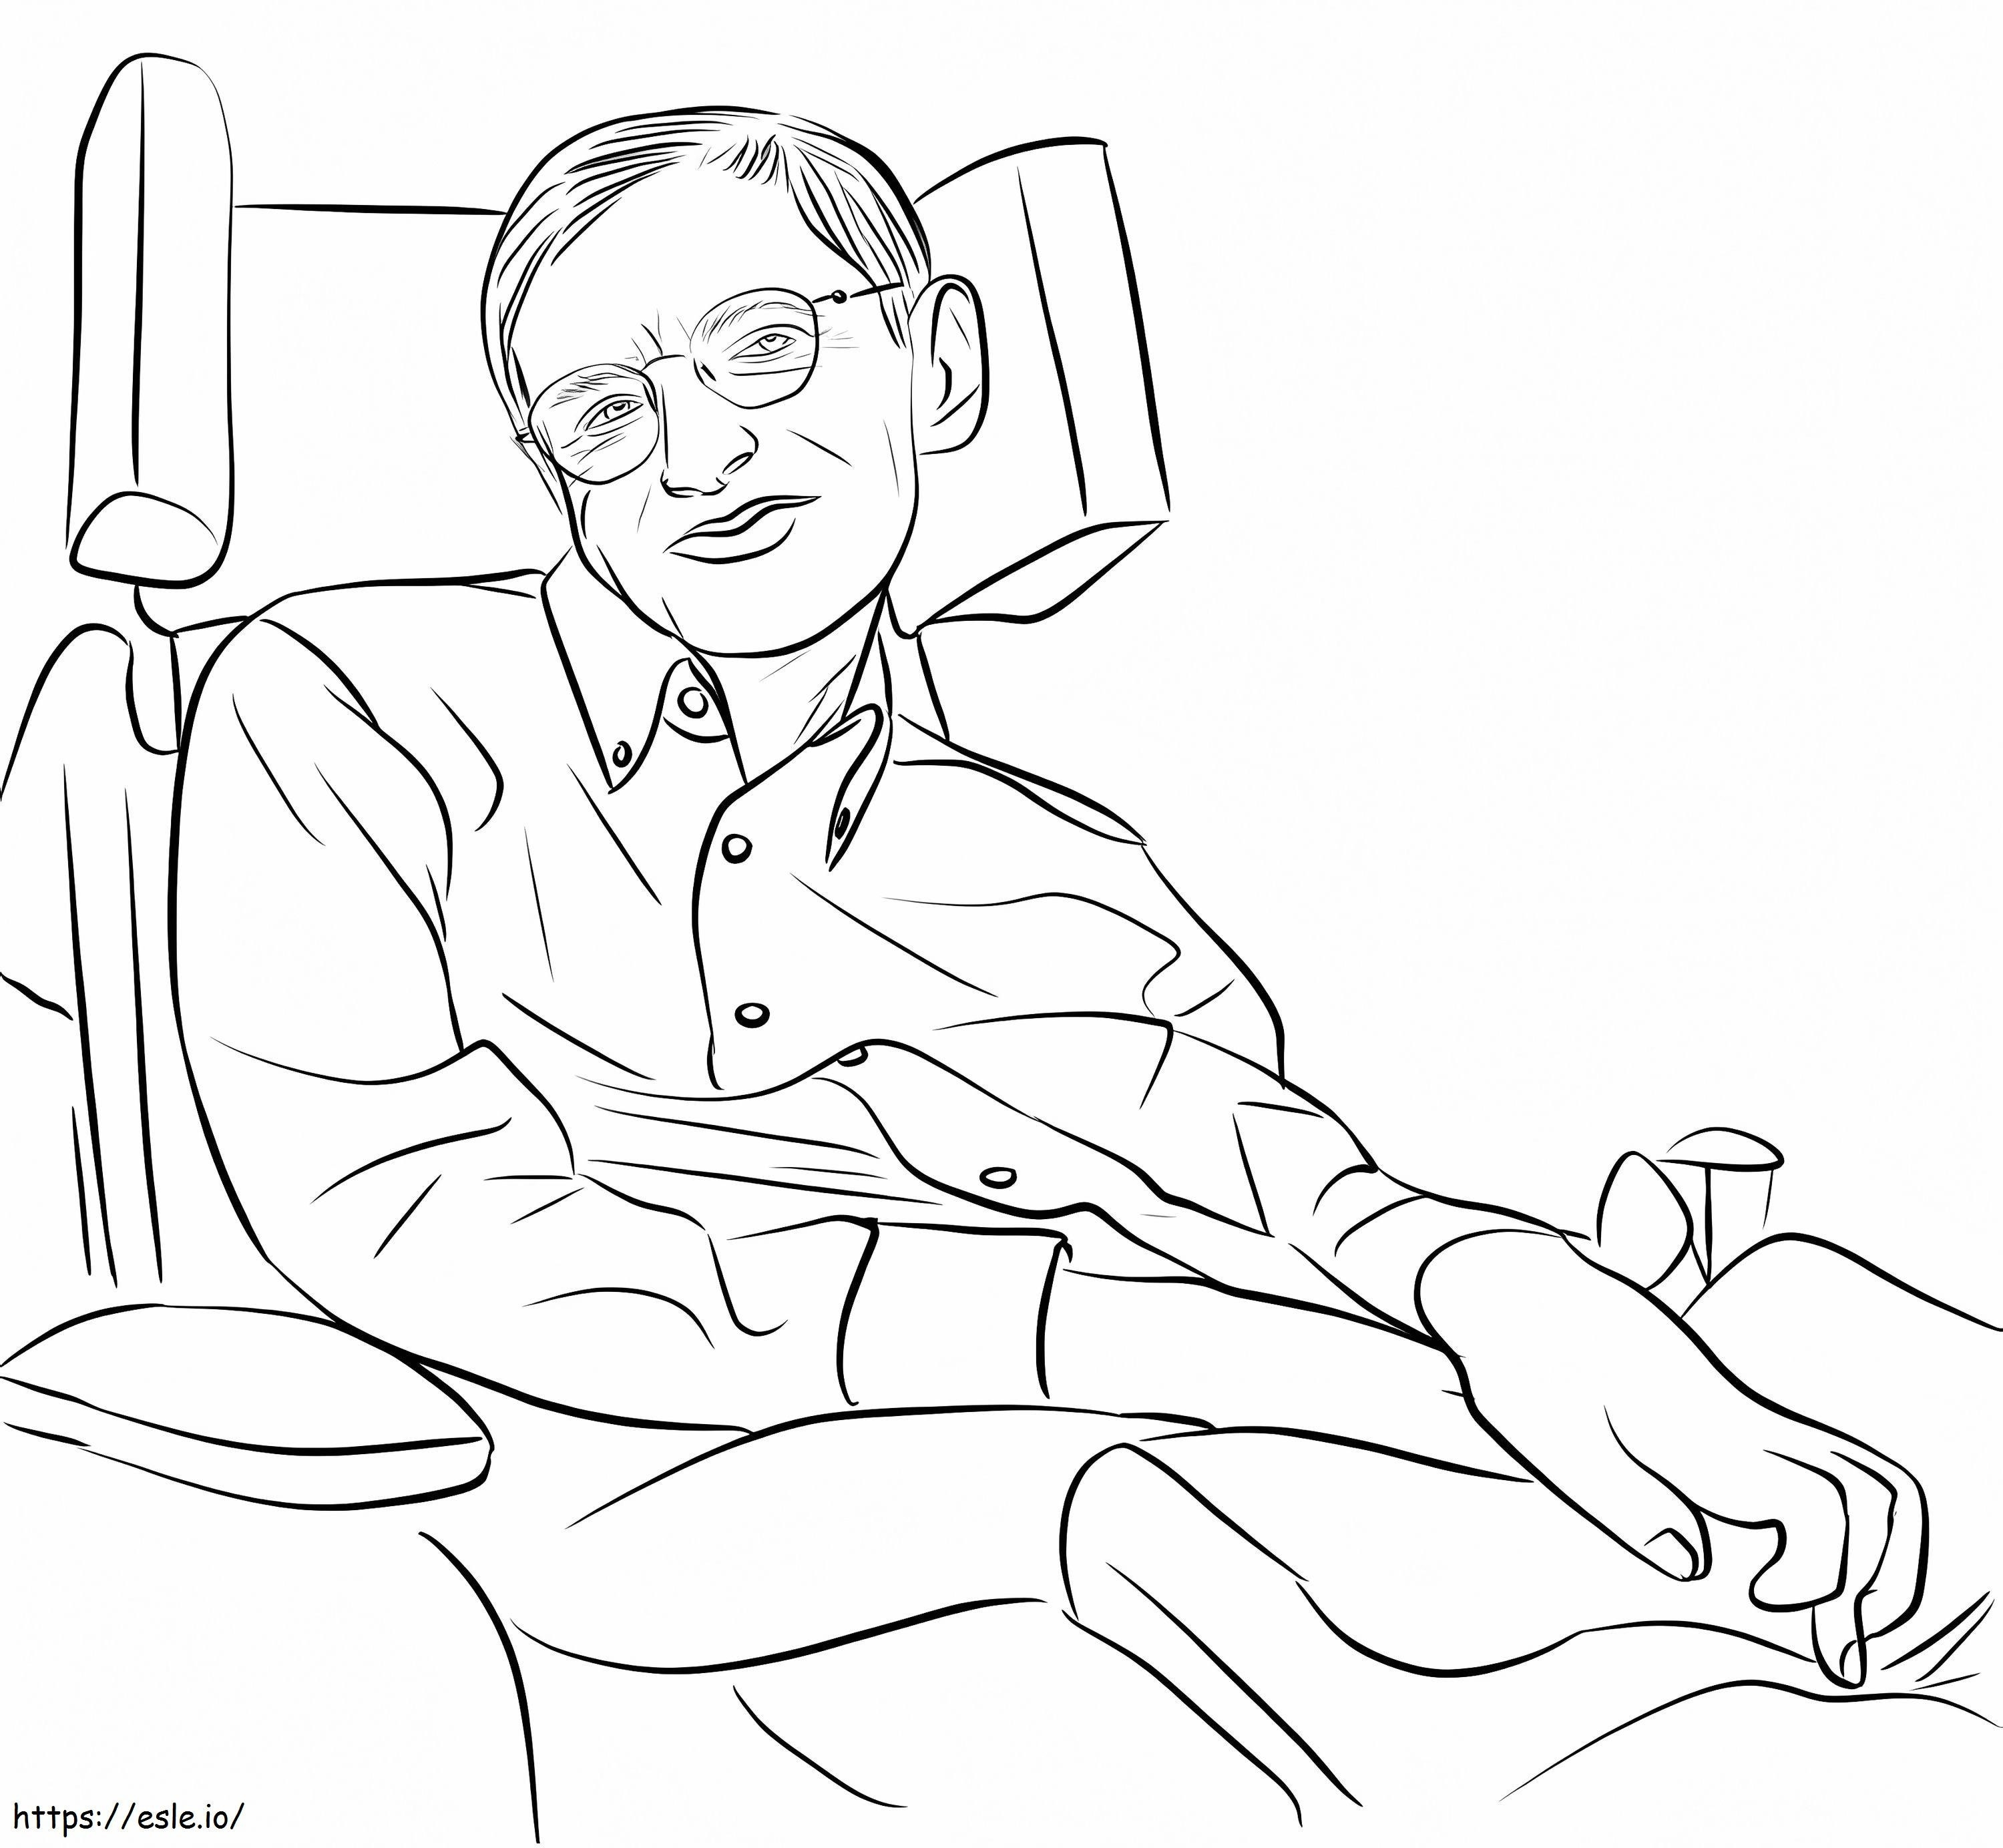 Stefan Hawking kleurplaat kleurplaat